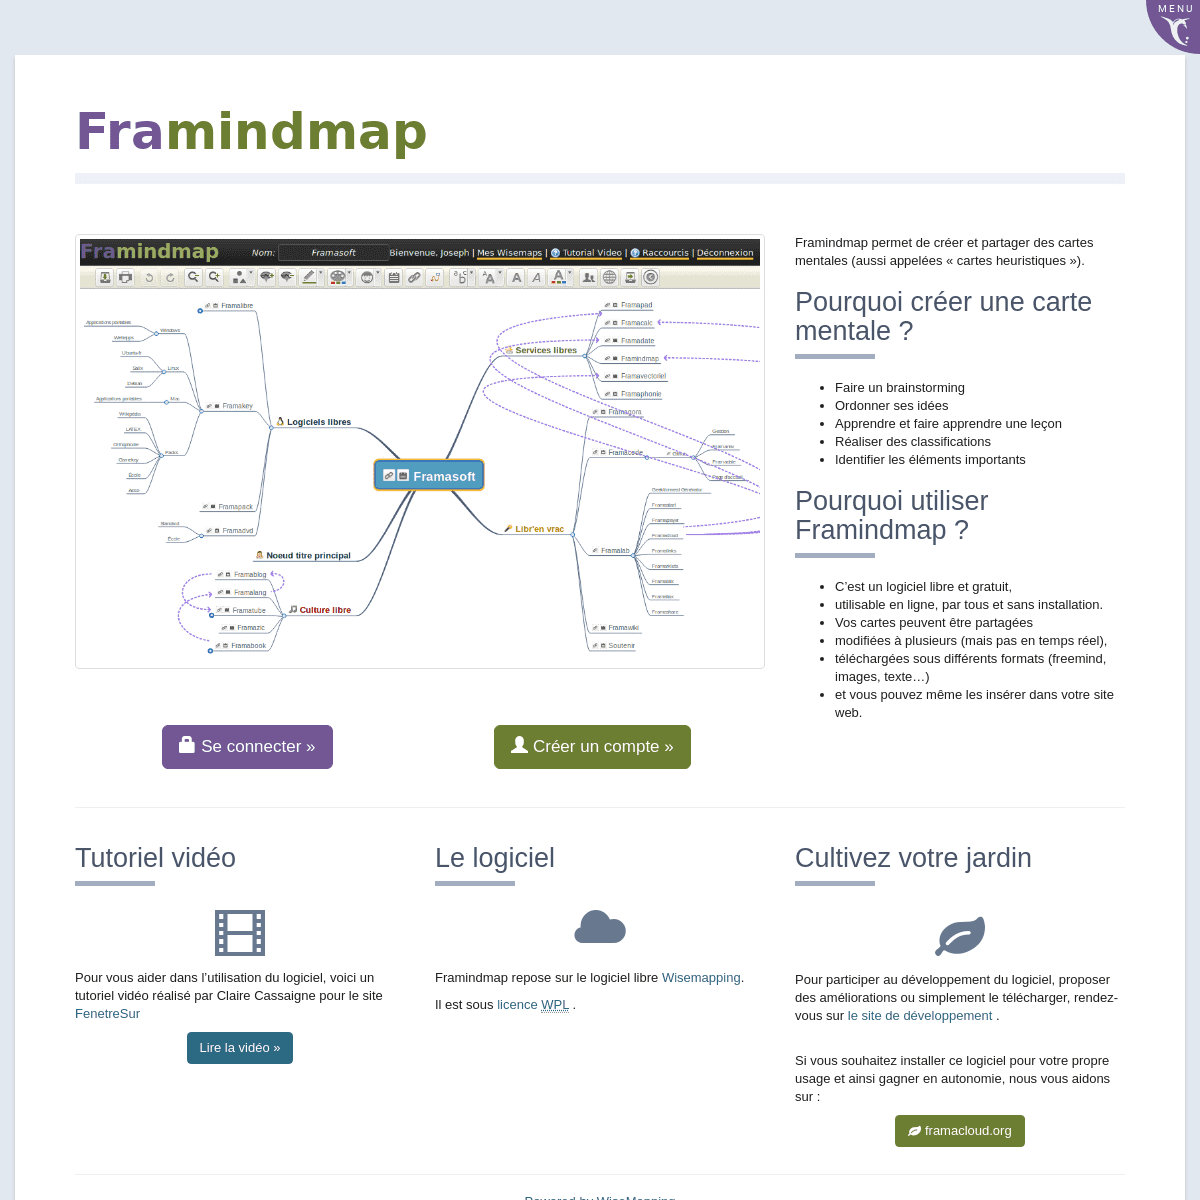 A complete backup of https://framindmap.org